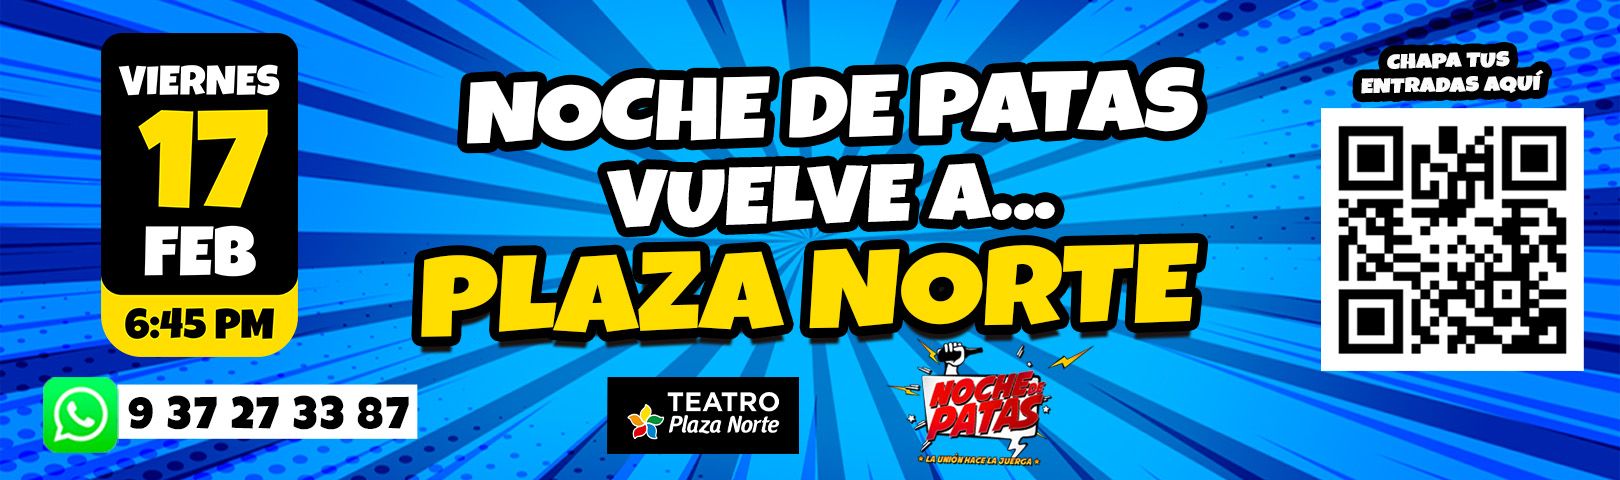 Noche de Patas - Plaza Norte